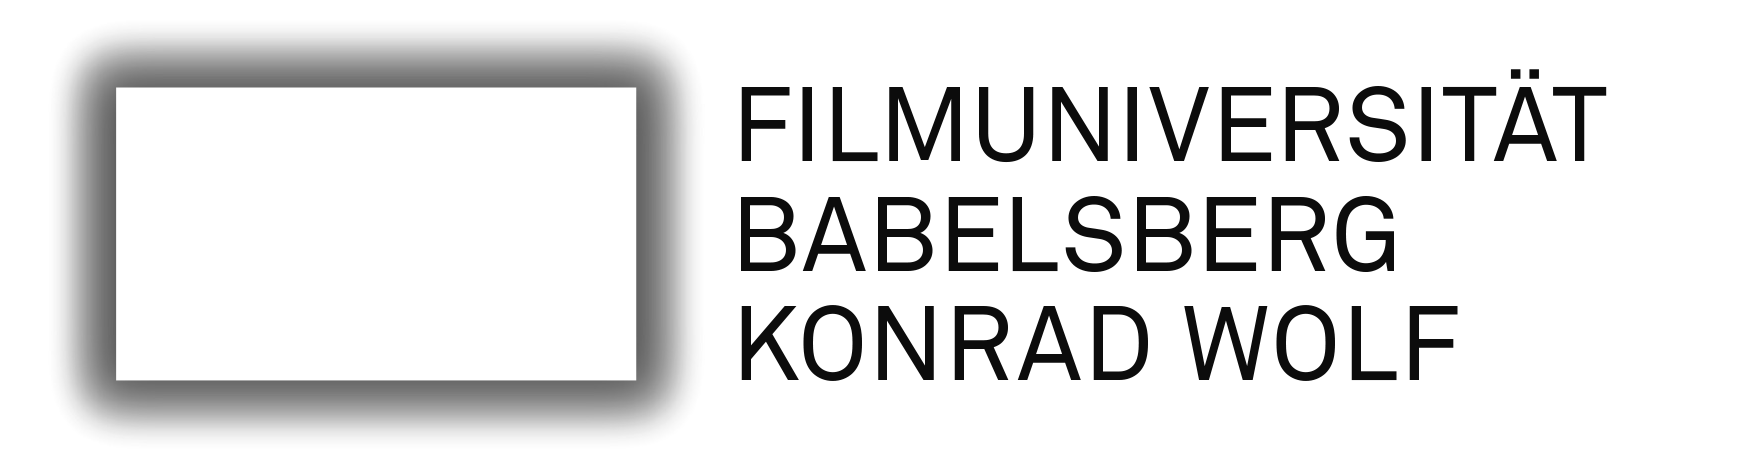 Logo der Filmuniversität Babelsberg Konrad Wolf -  ein leuchtendes Rechteck, daneben ein Schriftzug